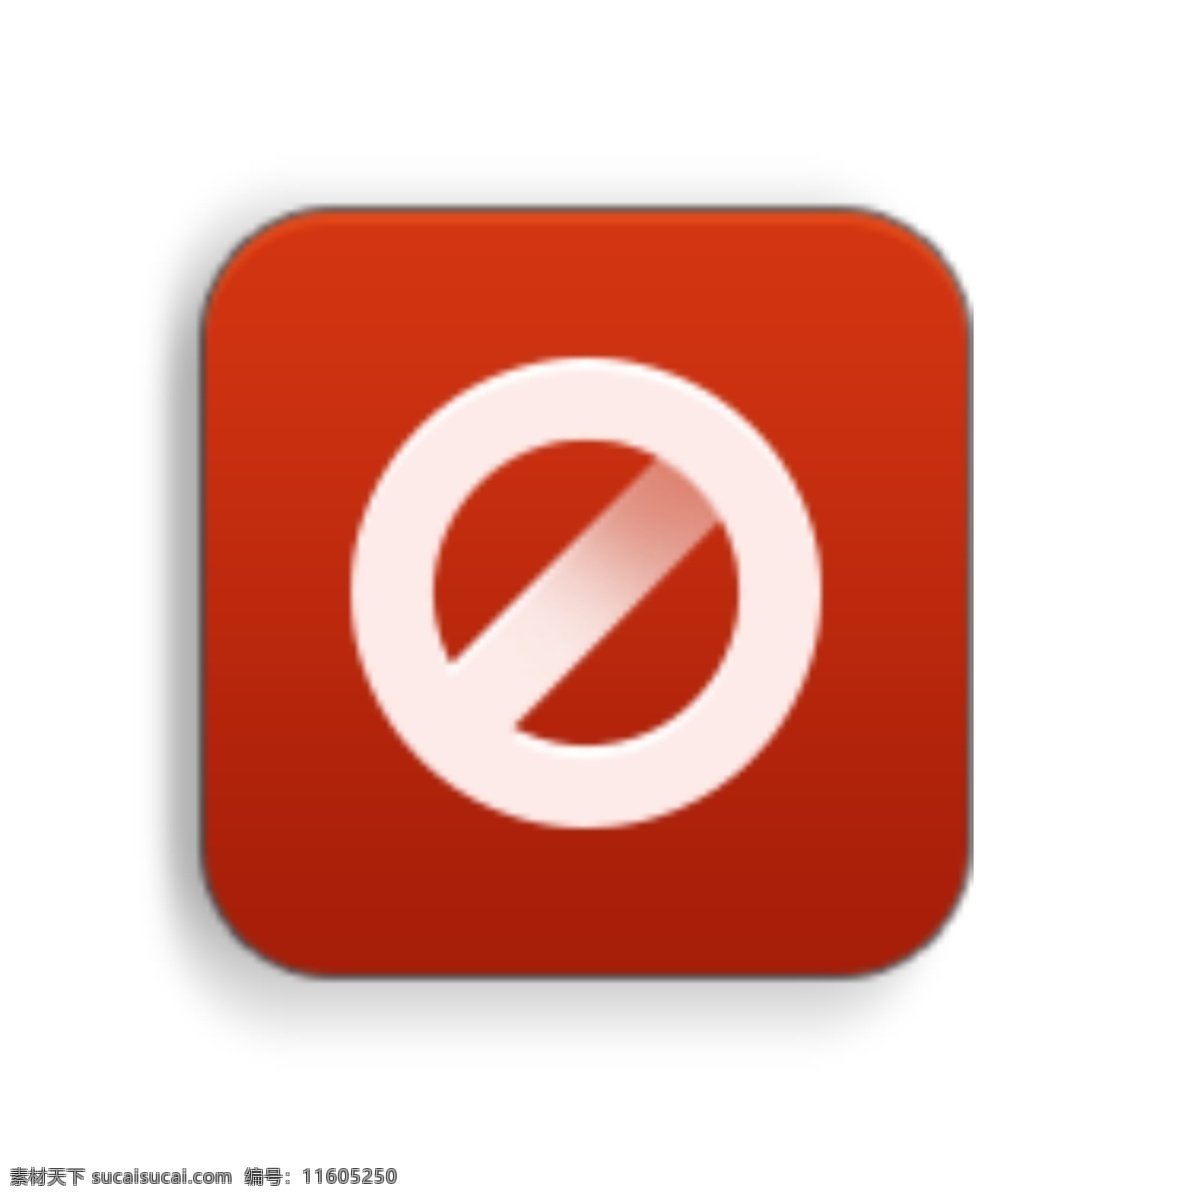 禁用图标 小米app 软件图标